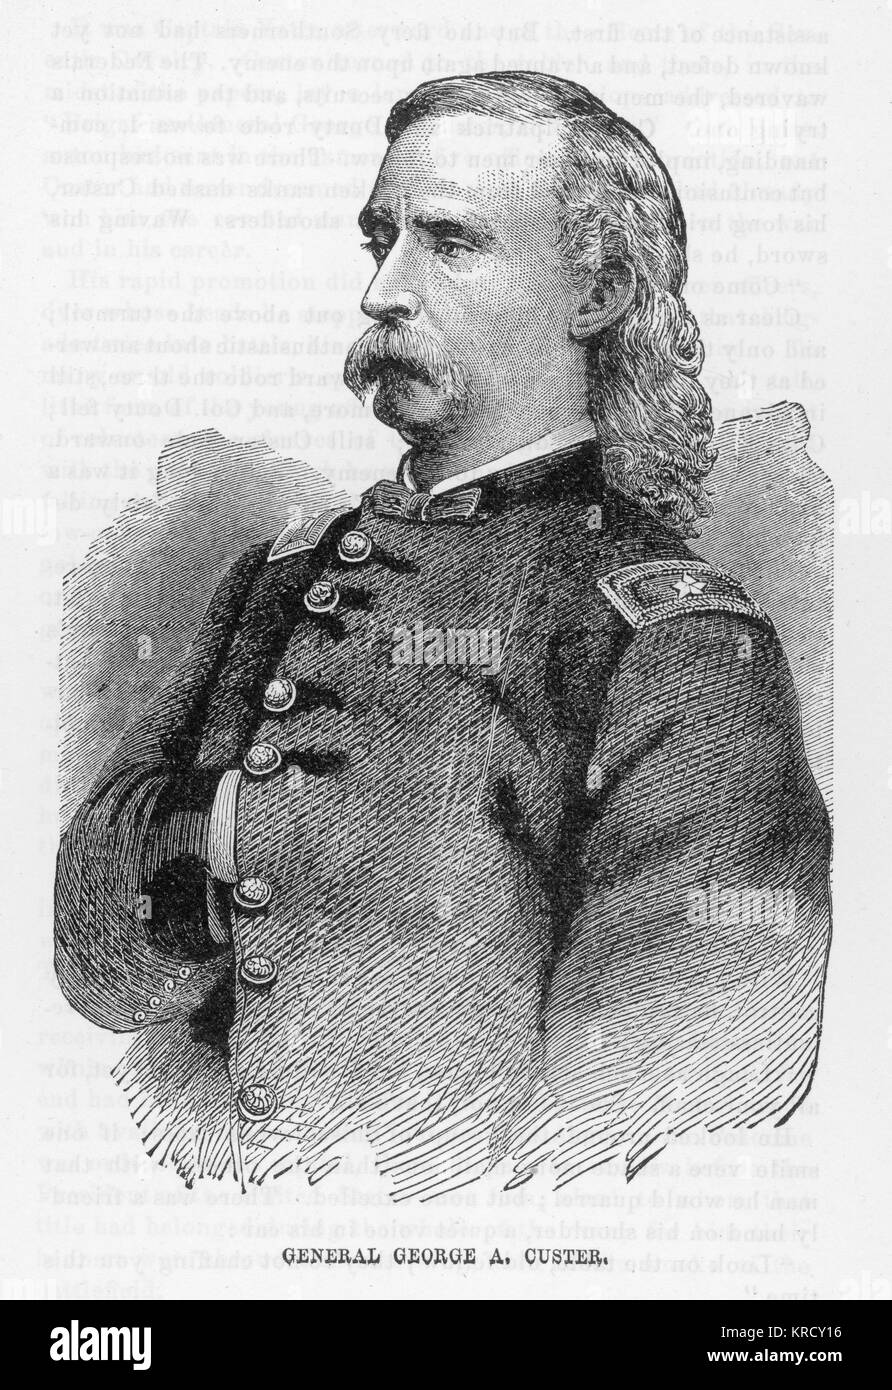 Un soldado estadounidense George Custer, muerto en la batalla de Little Big Horn. Fecha: 1839-1876 Foto de stock